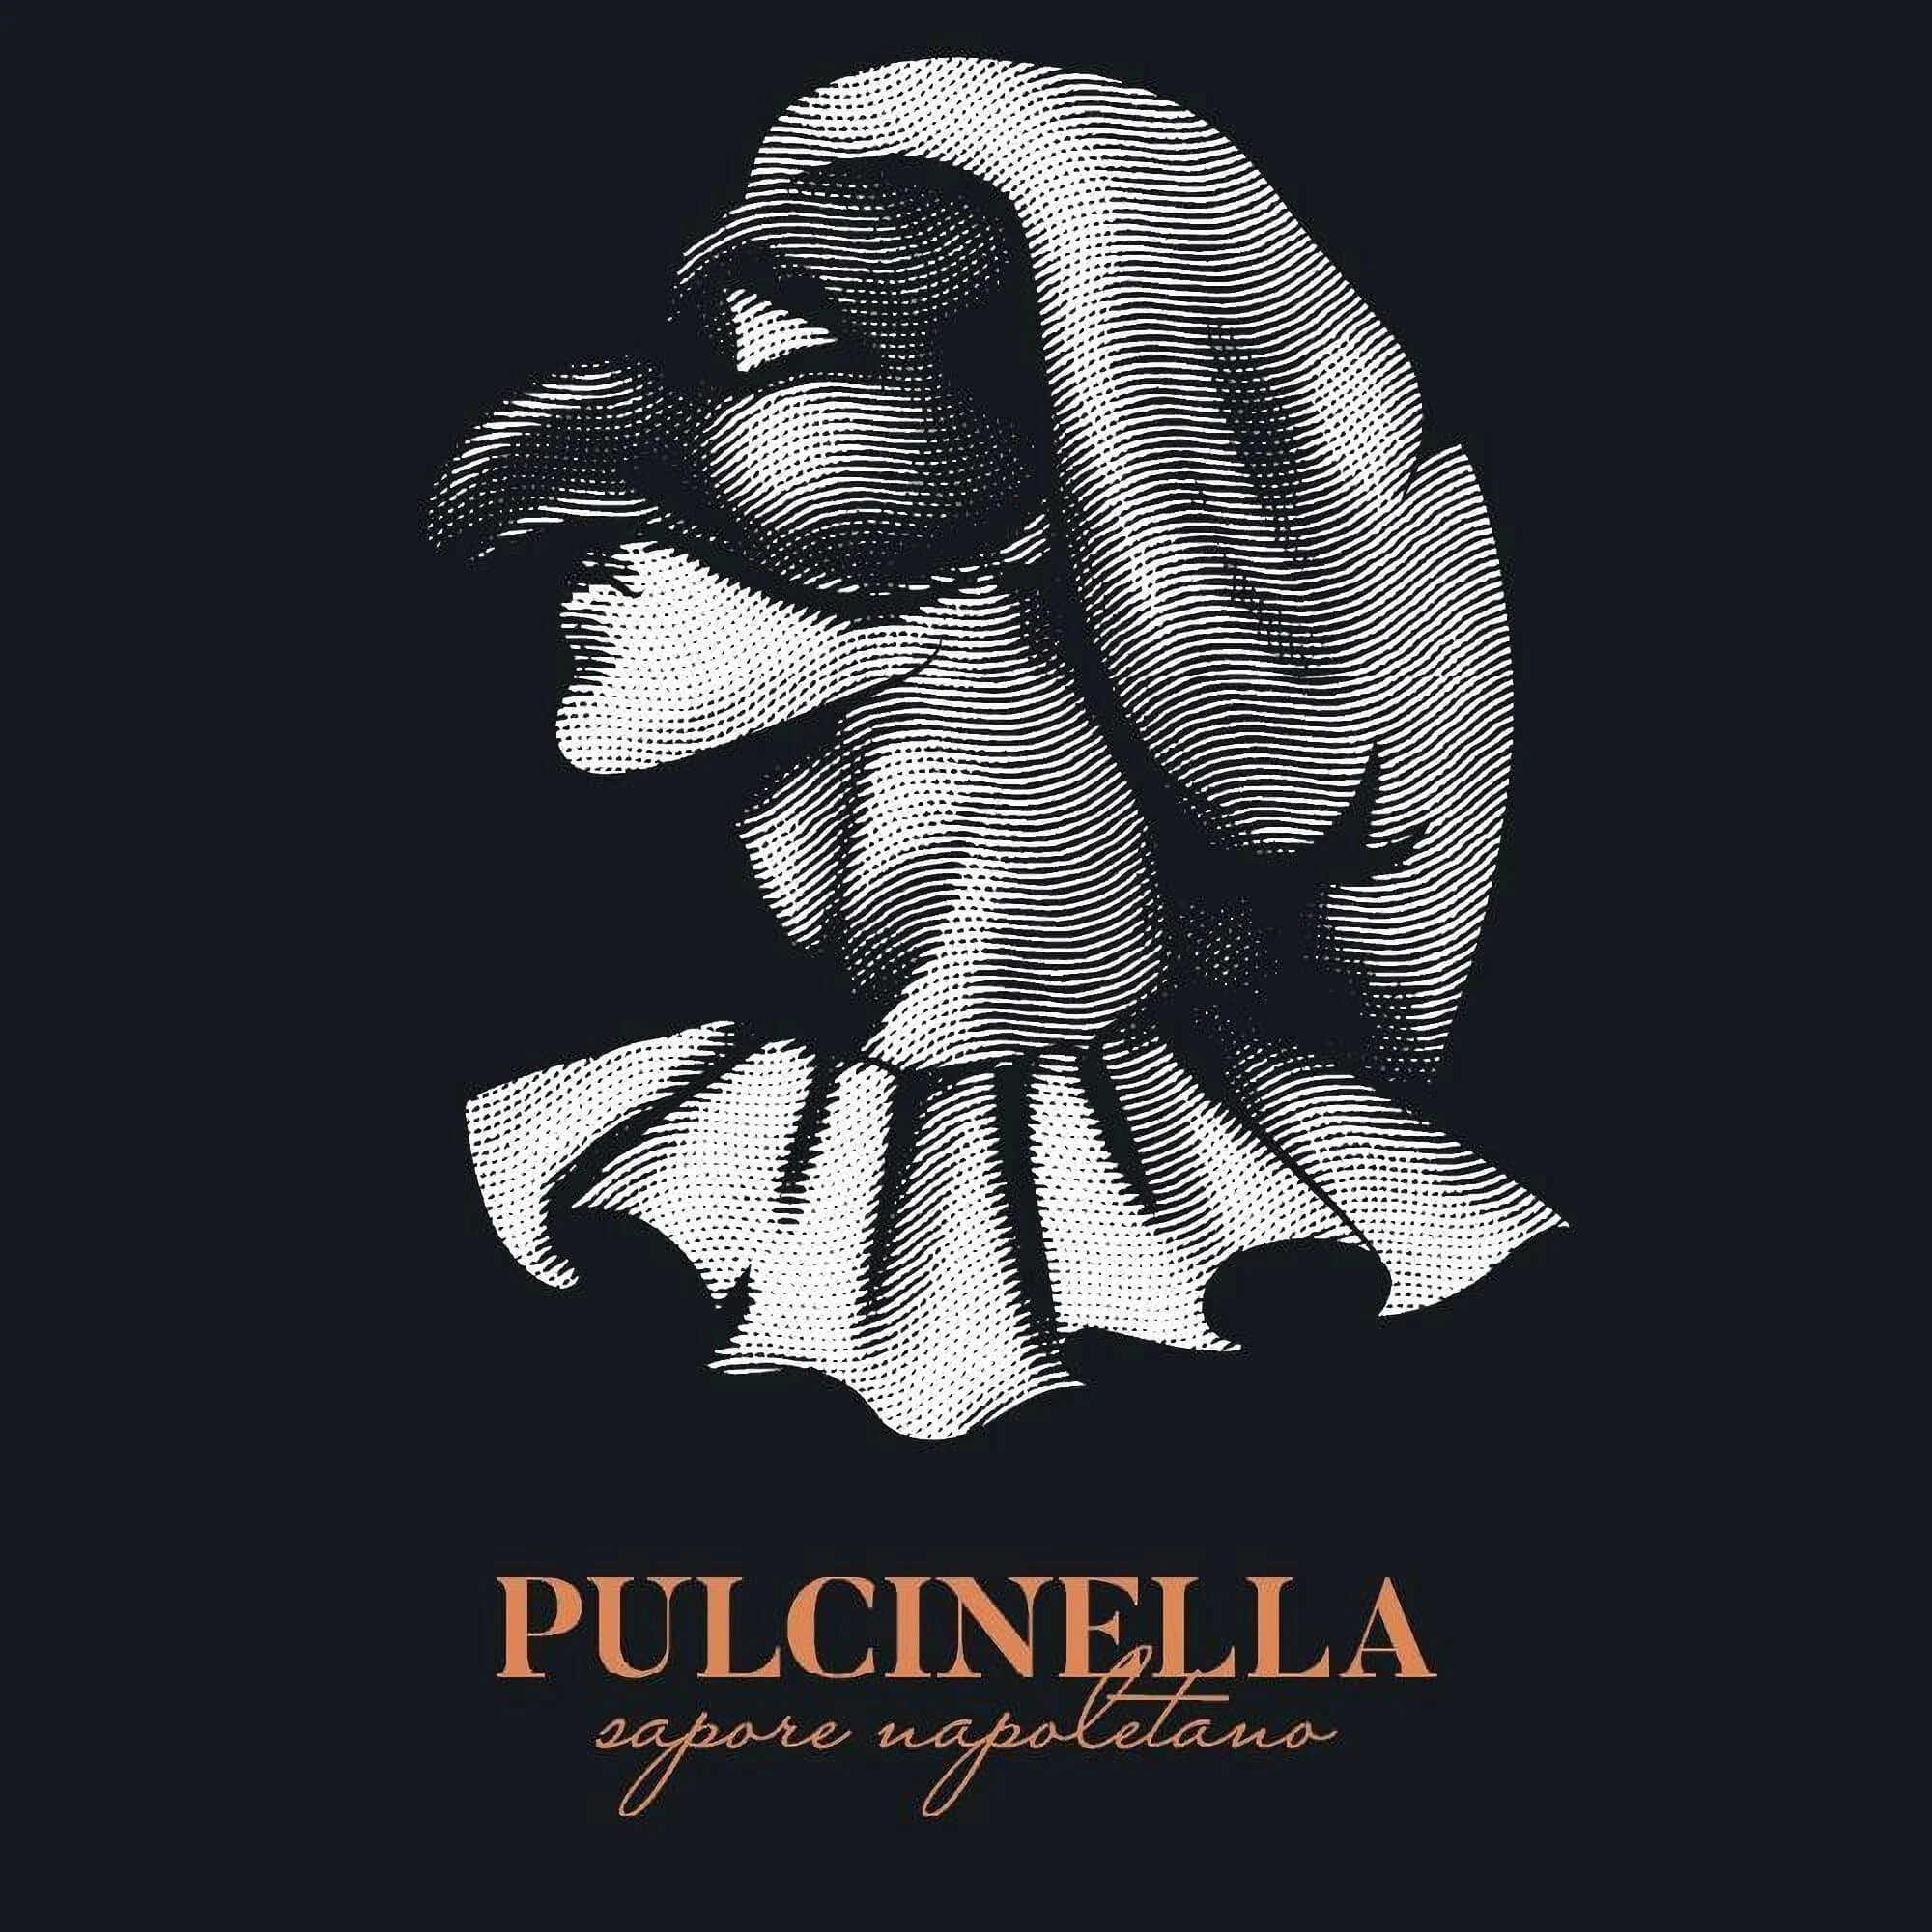 Restaurantes-pulcinella-ecuador-17745